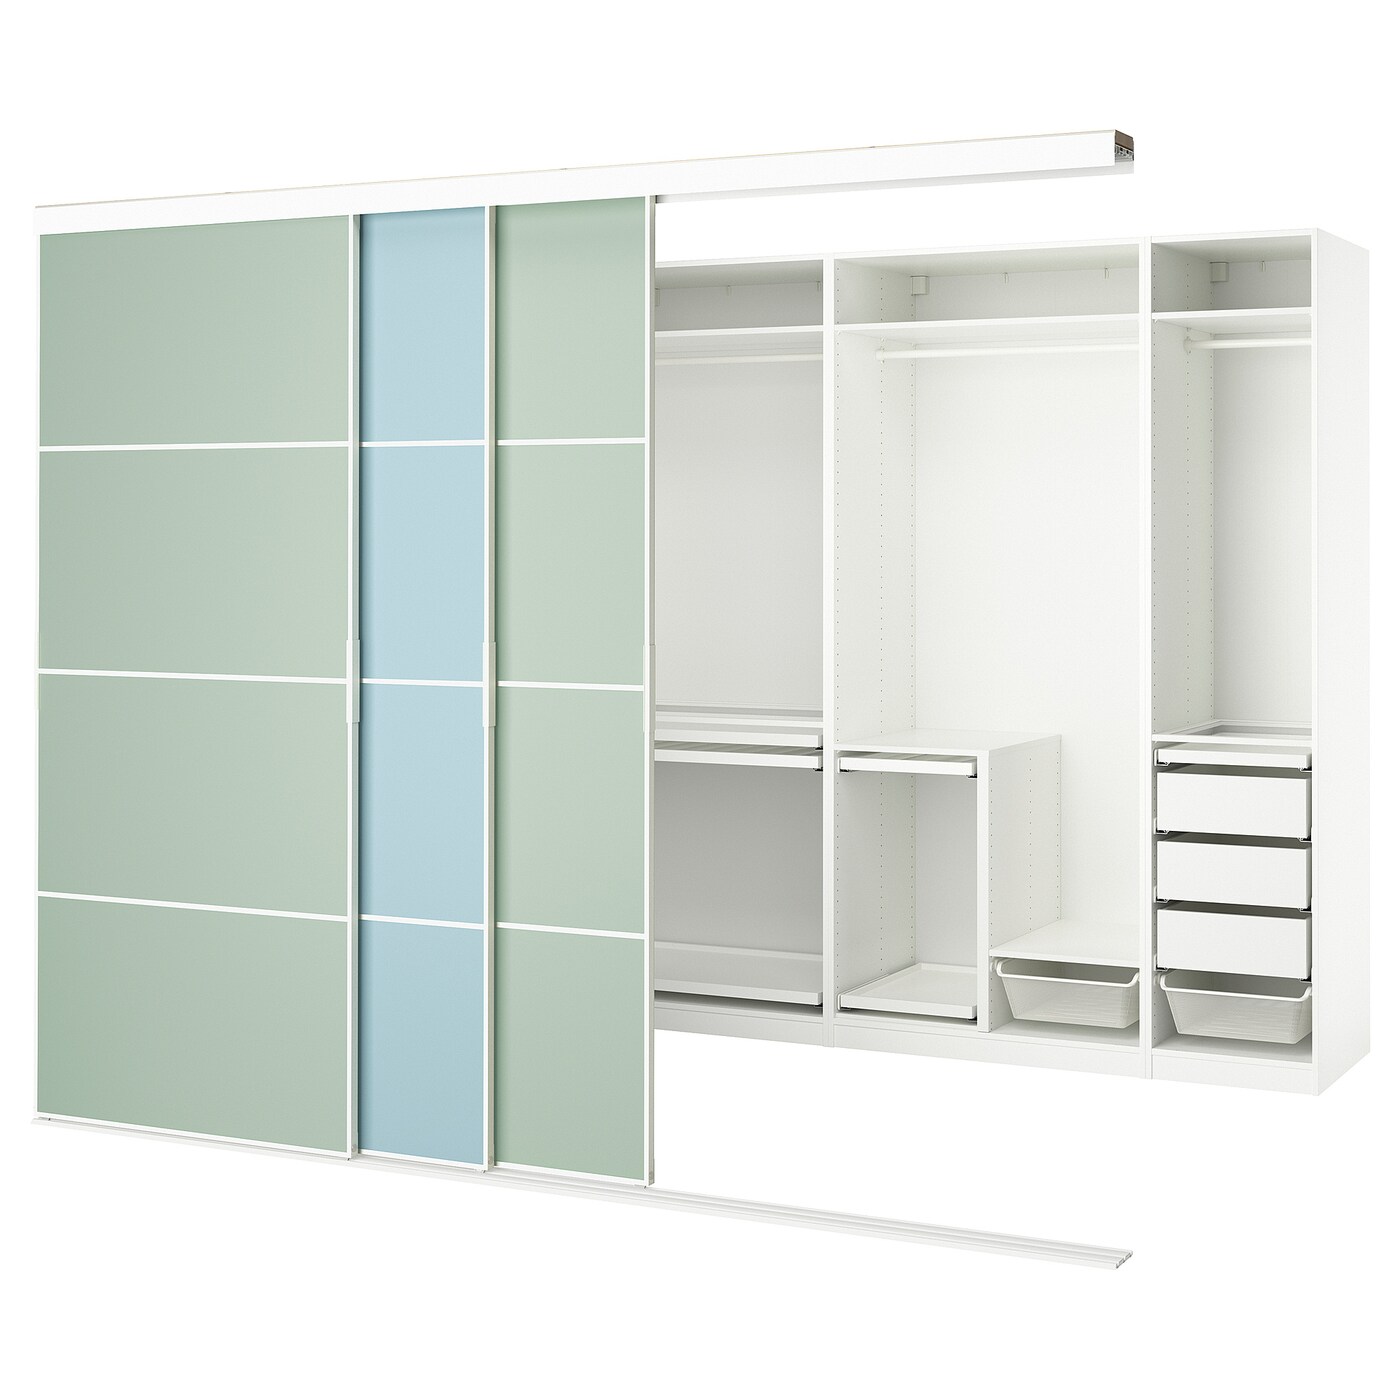 Шкаф - SKYTTA / PAX IKEA/ СКИТТА / ПАКС  ИКЕА, 240х301 см, белый/зеленый